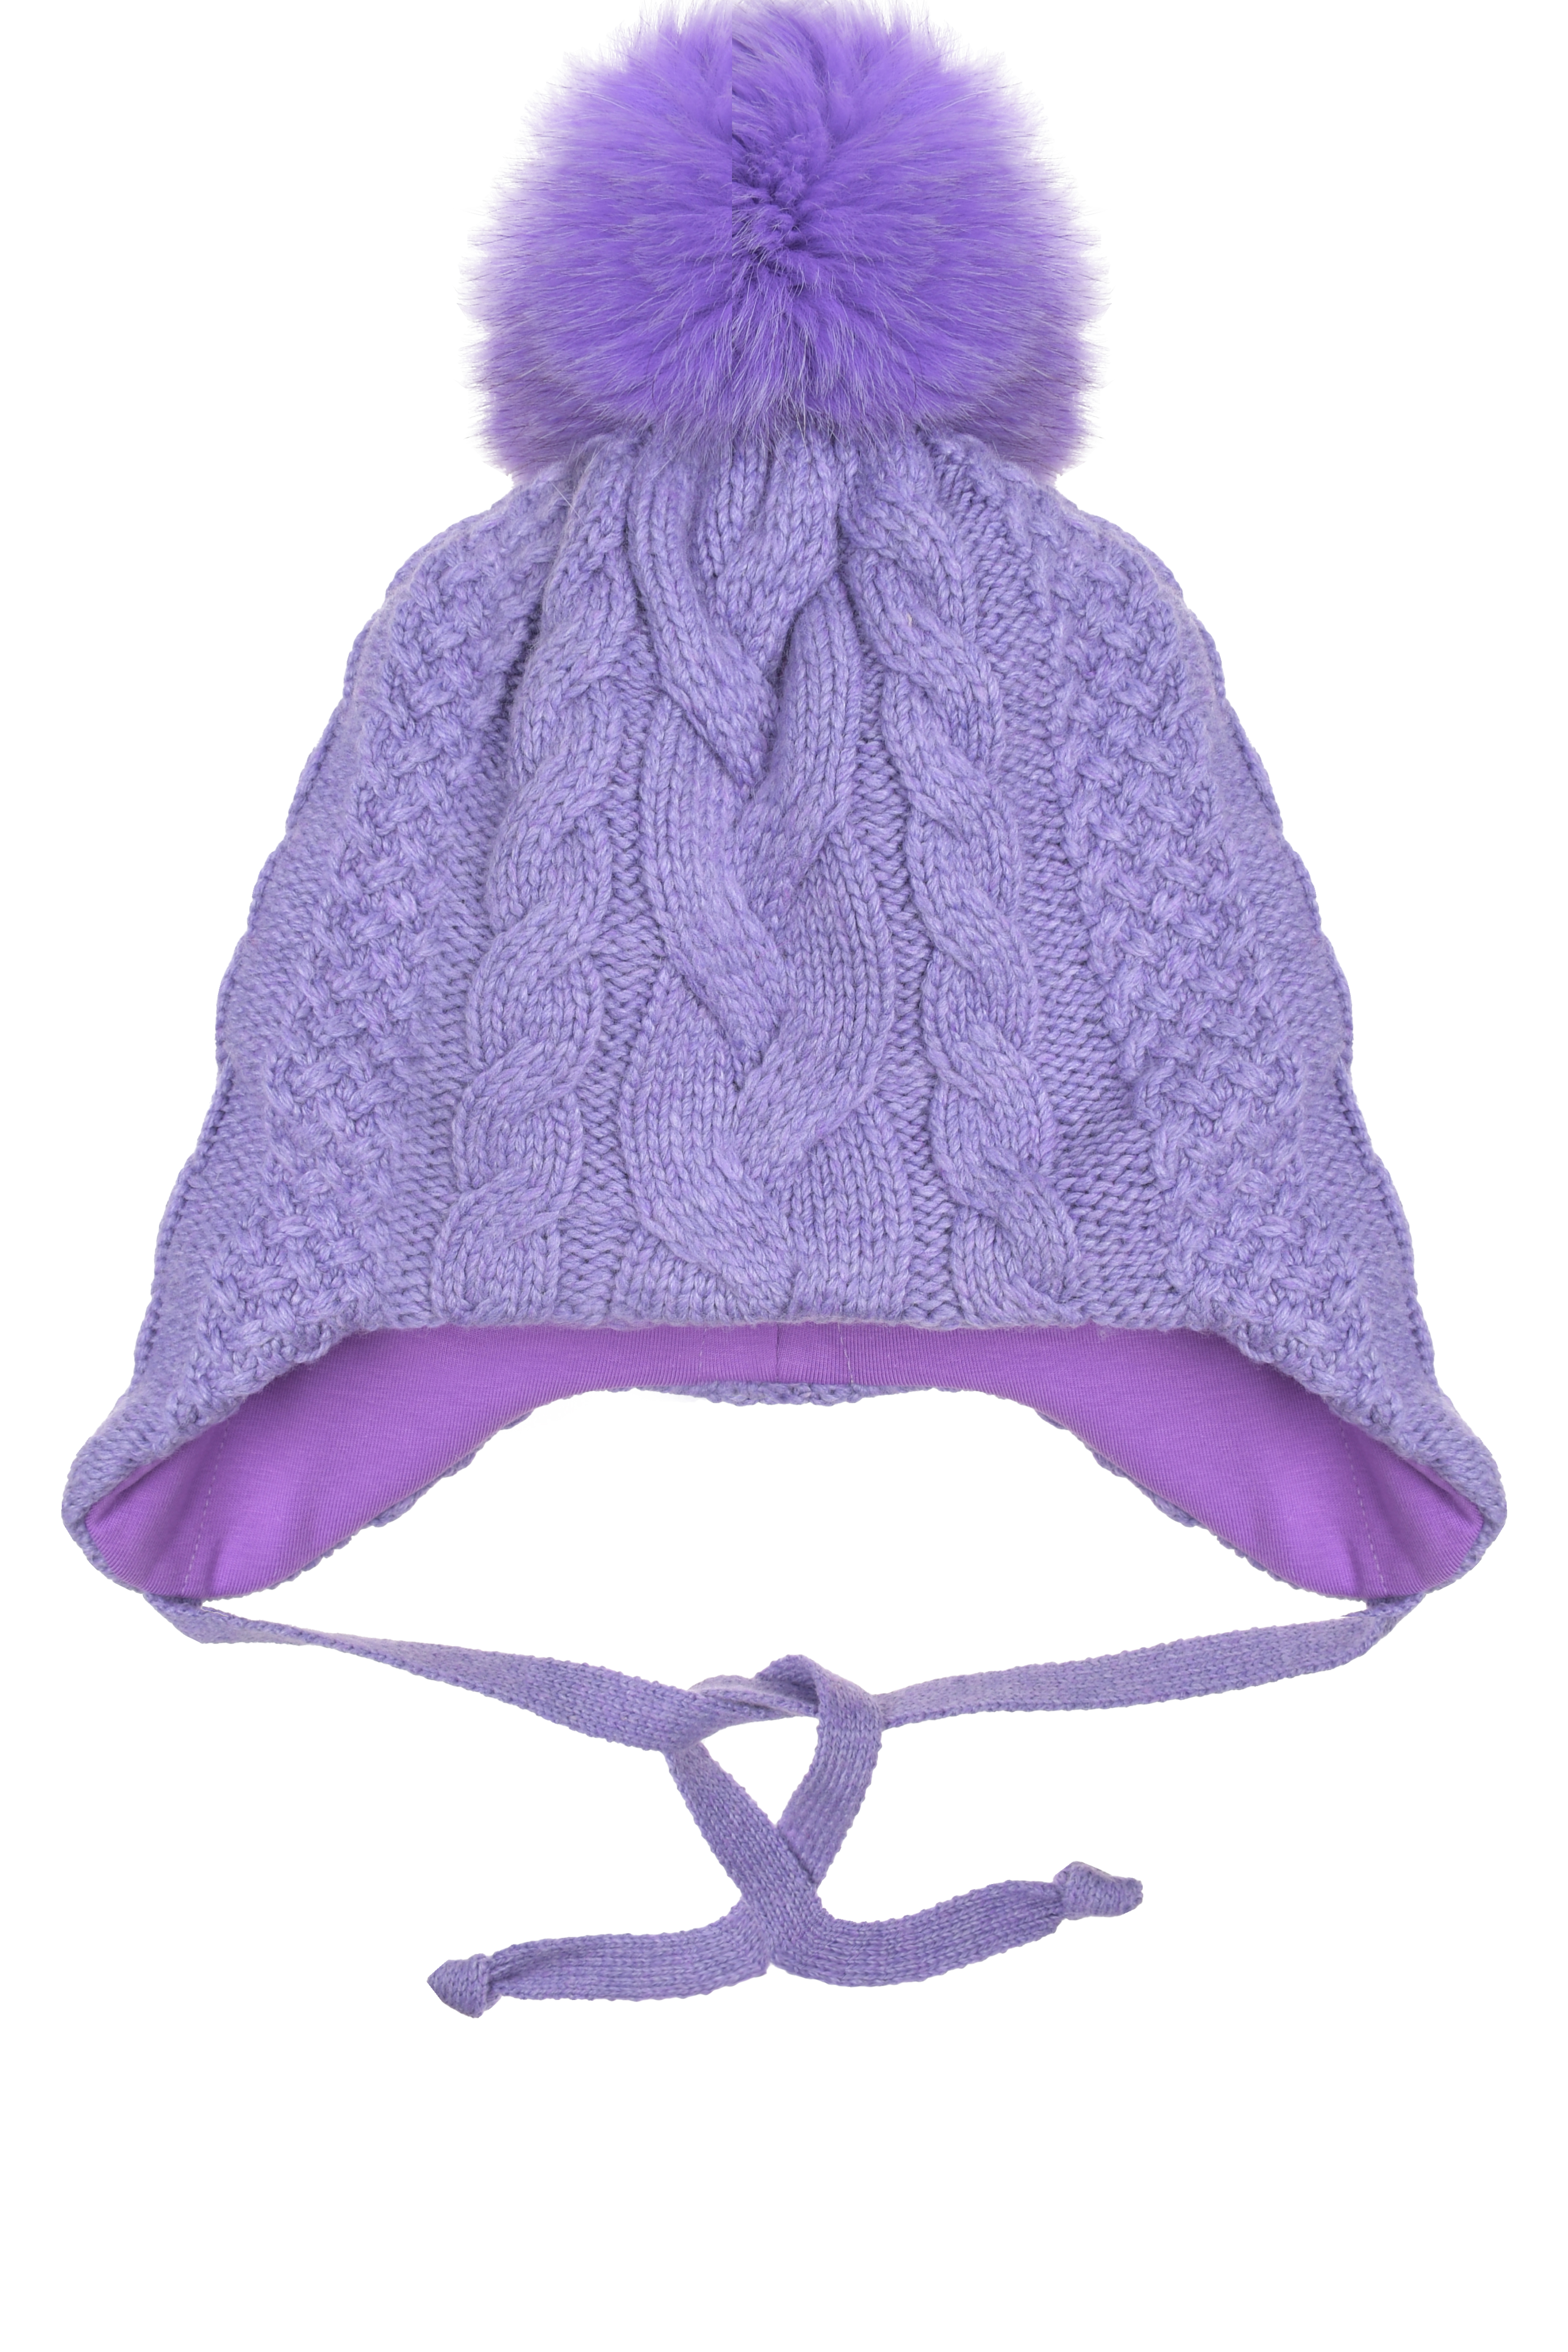 Сиреневая шапка с помпоном Chobi детская, размер 53, цвет сиреневый - фото 1